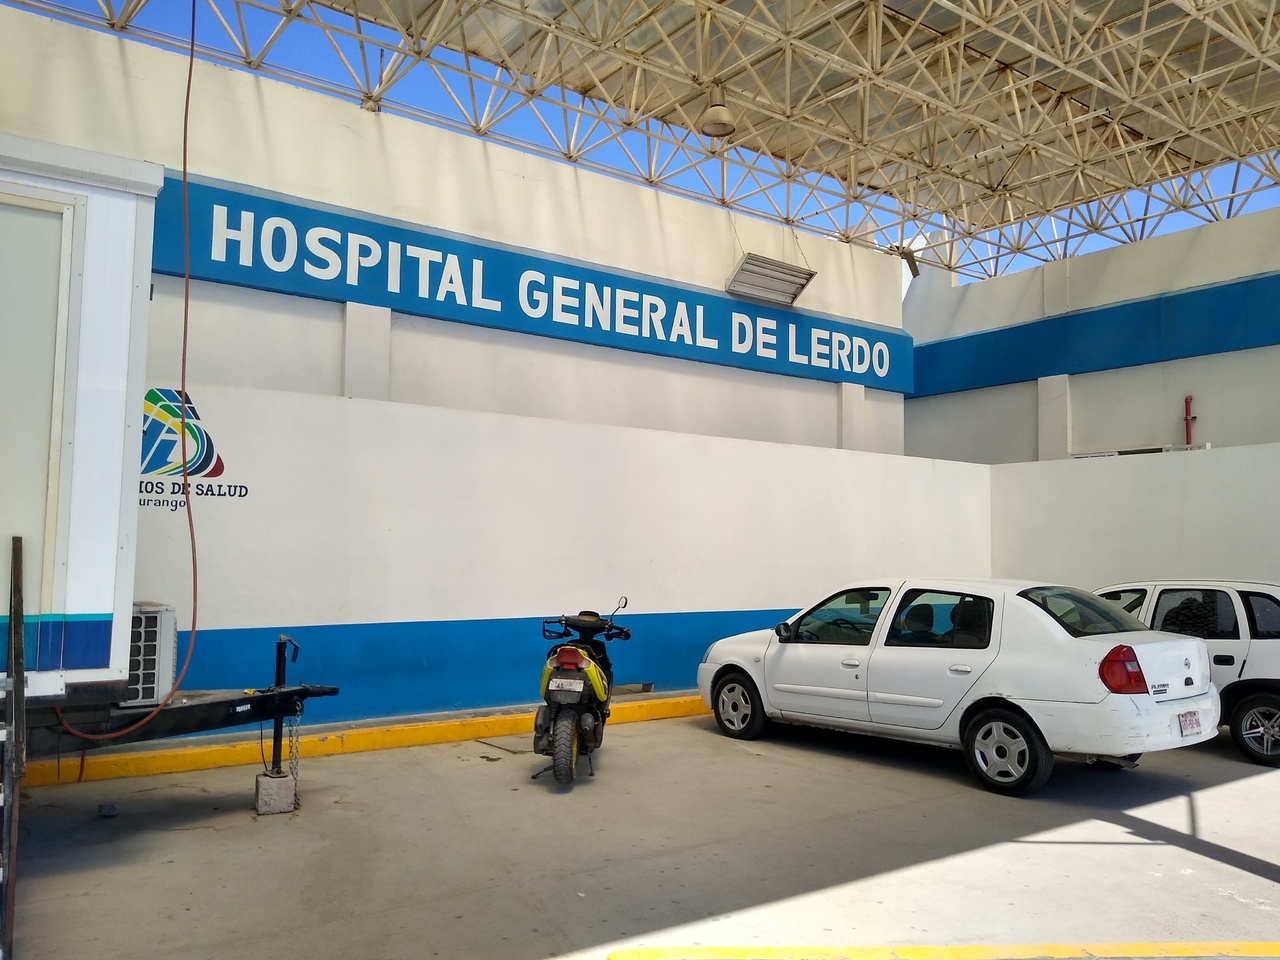 El joven fue trasladado a las instalaciones del Hospital General de Lerdo para su atención médica. (EL SIGLO DE TORREÓN)